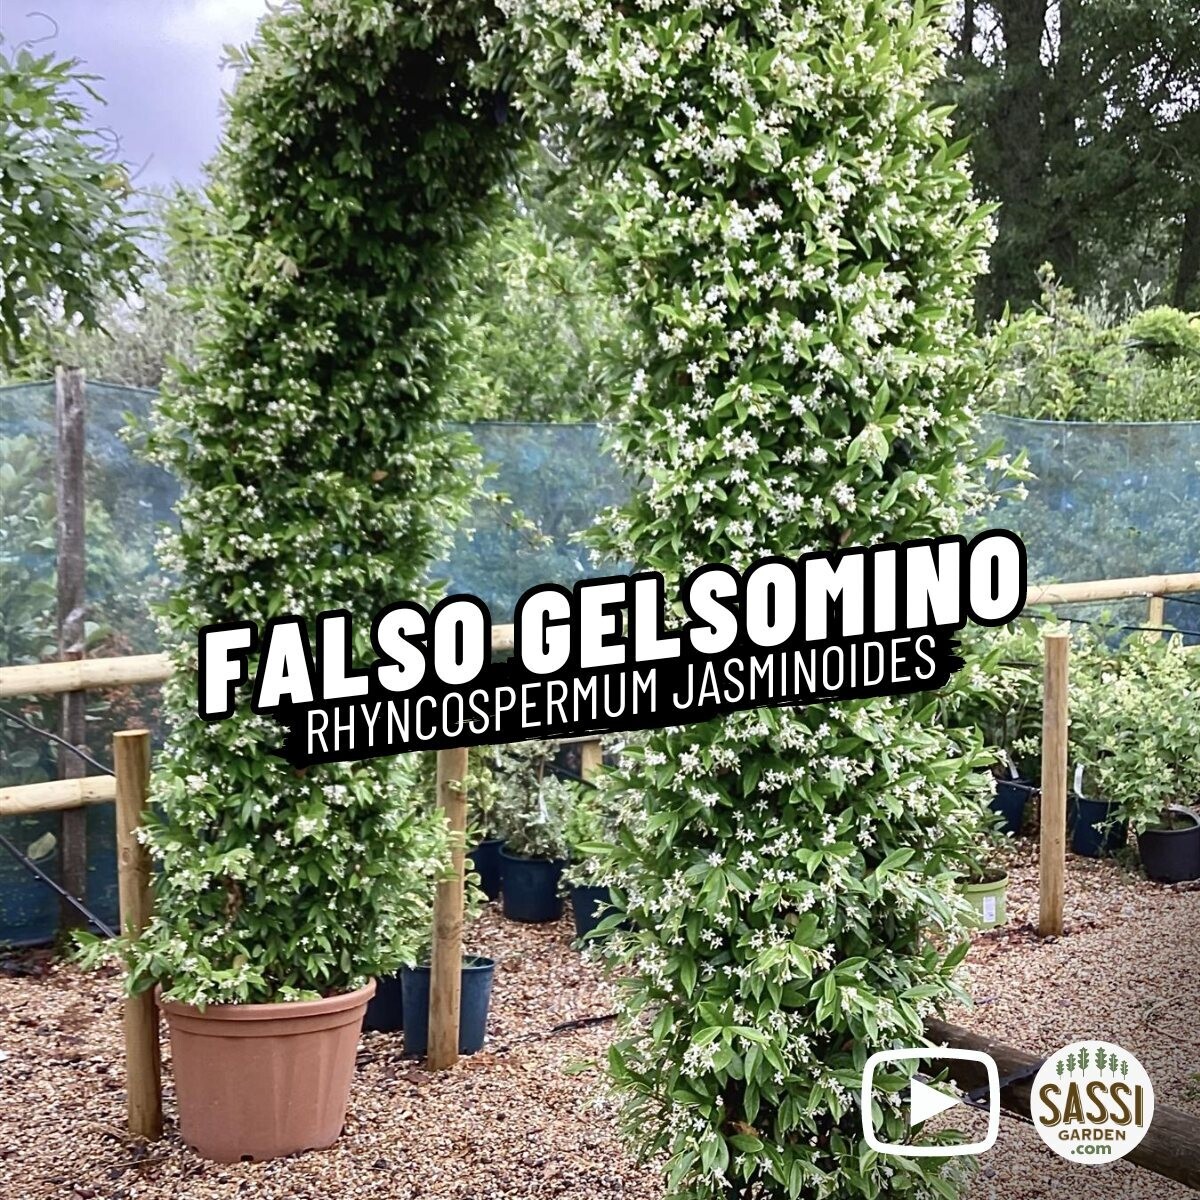 Falso Gelsomino, Rincospermo, Rhyncospermum jasminoides, Trachelospermum jasminoides, FIORE BIANCO - vaso Ø18 cm, h 130 cm, 2 CANNE